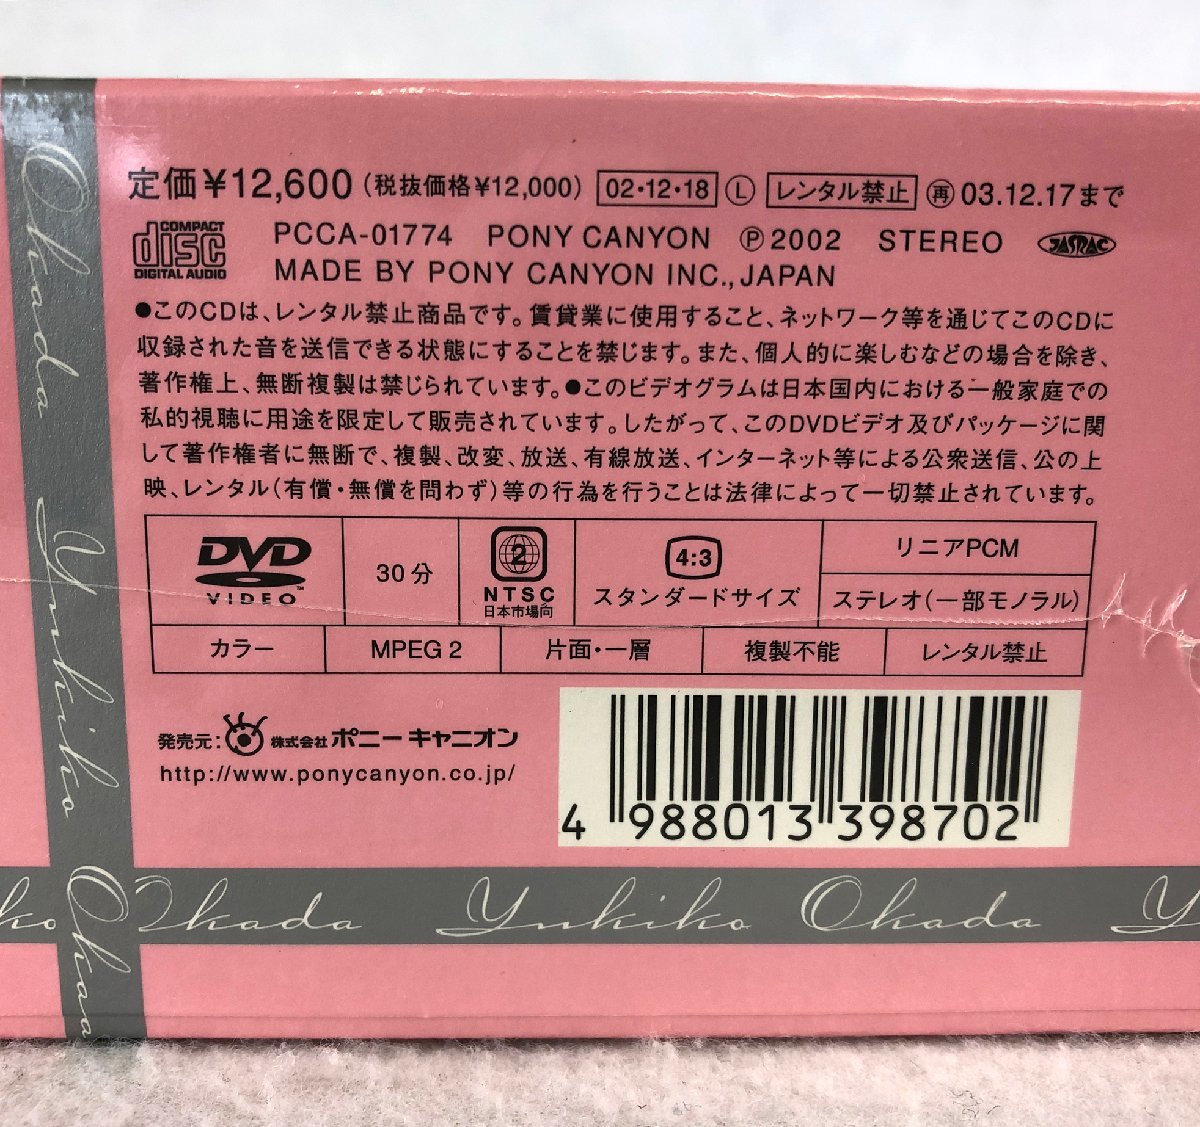 岡田有希子CD/DVD-BOX「贈りものⅢ」 オンラインストア販促 www.m 